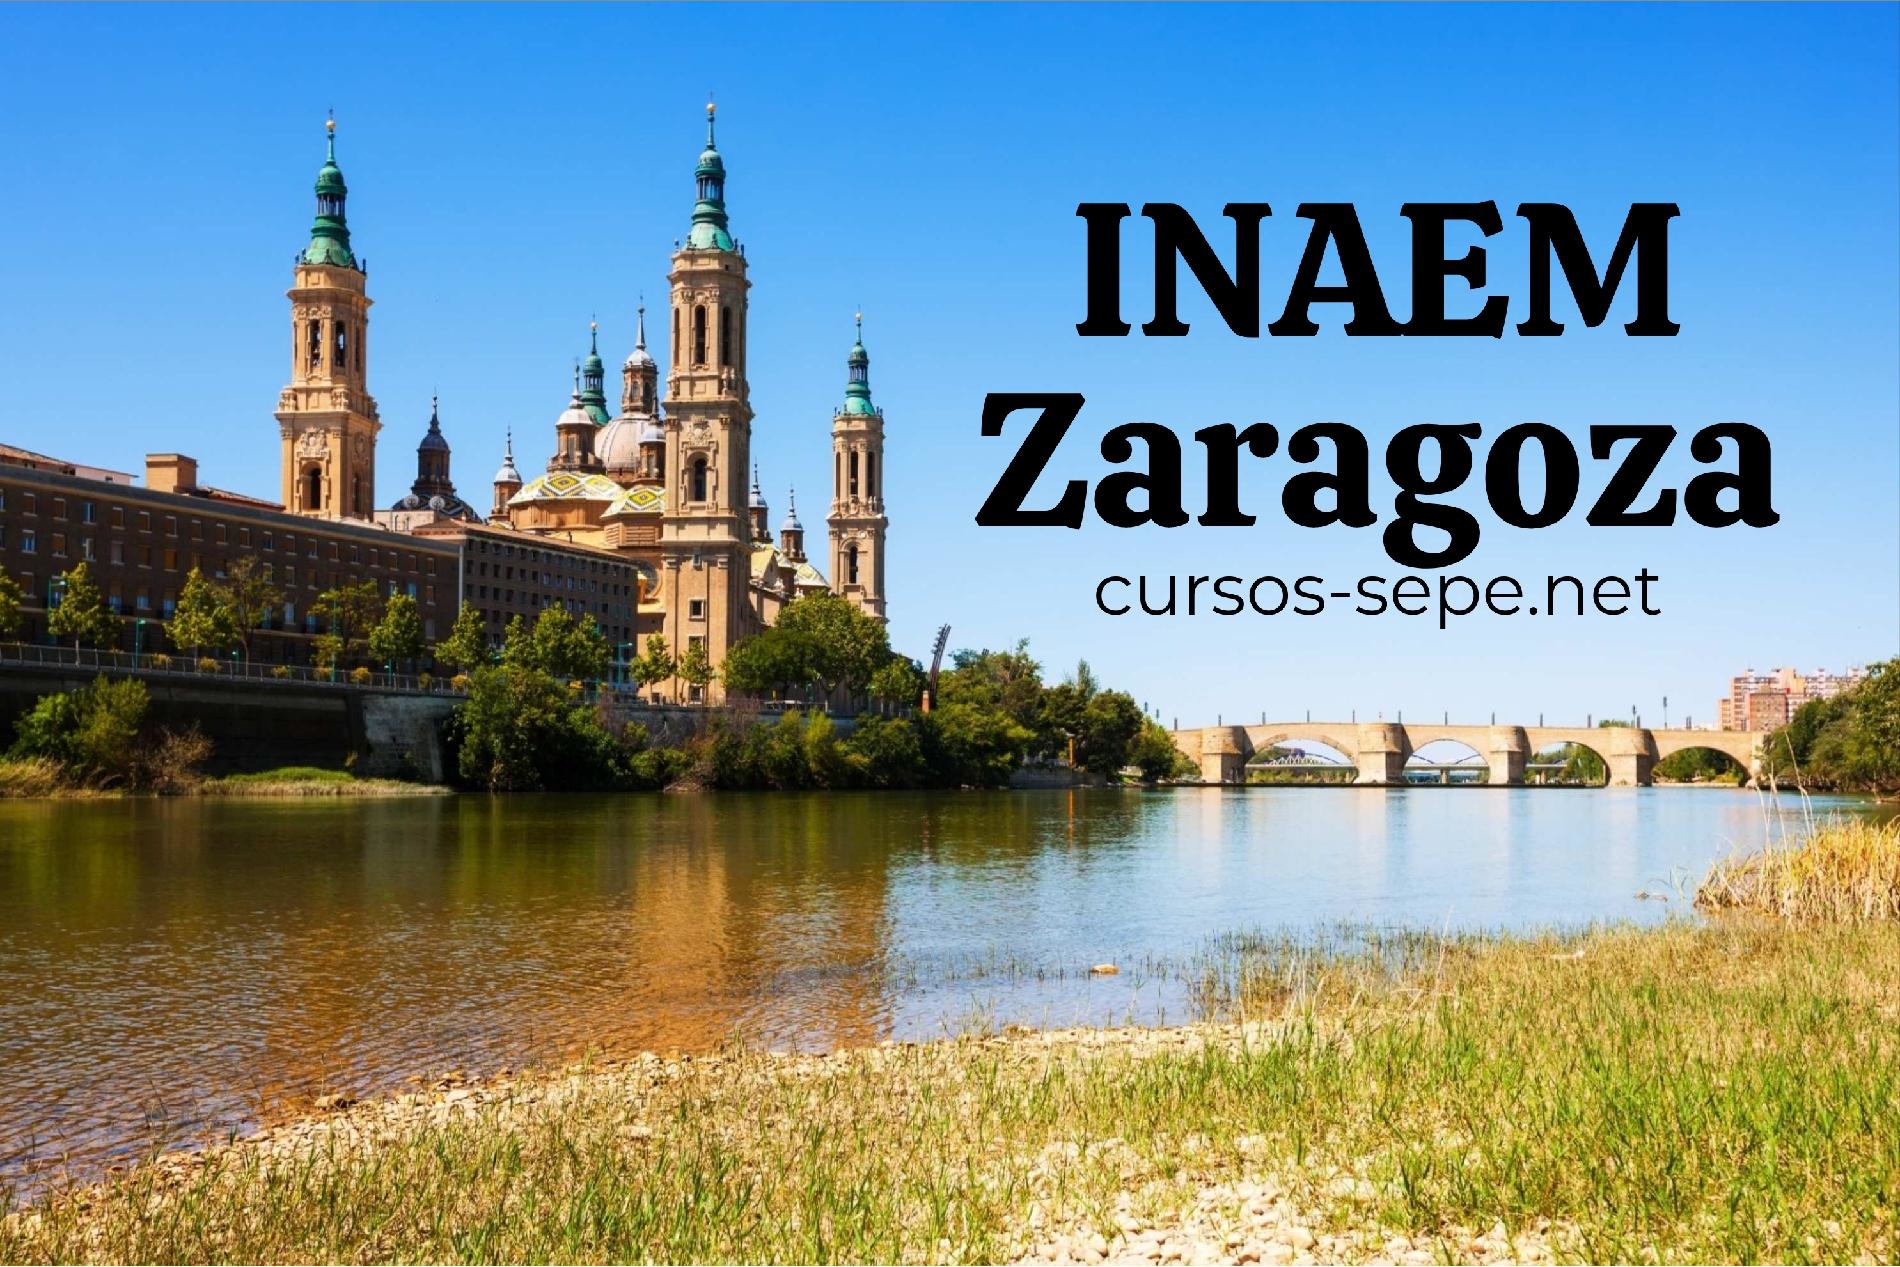 Descubre INAEM la oficina de empelo de referencia de Aragón y sus provincias de Zaragoza, Huesca y Teruel para cursos, empleo y ayudas.